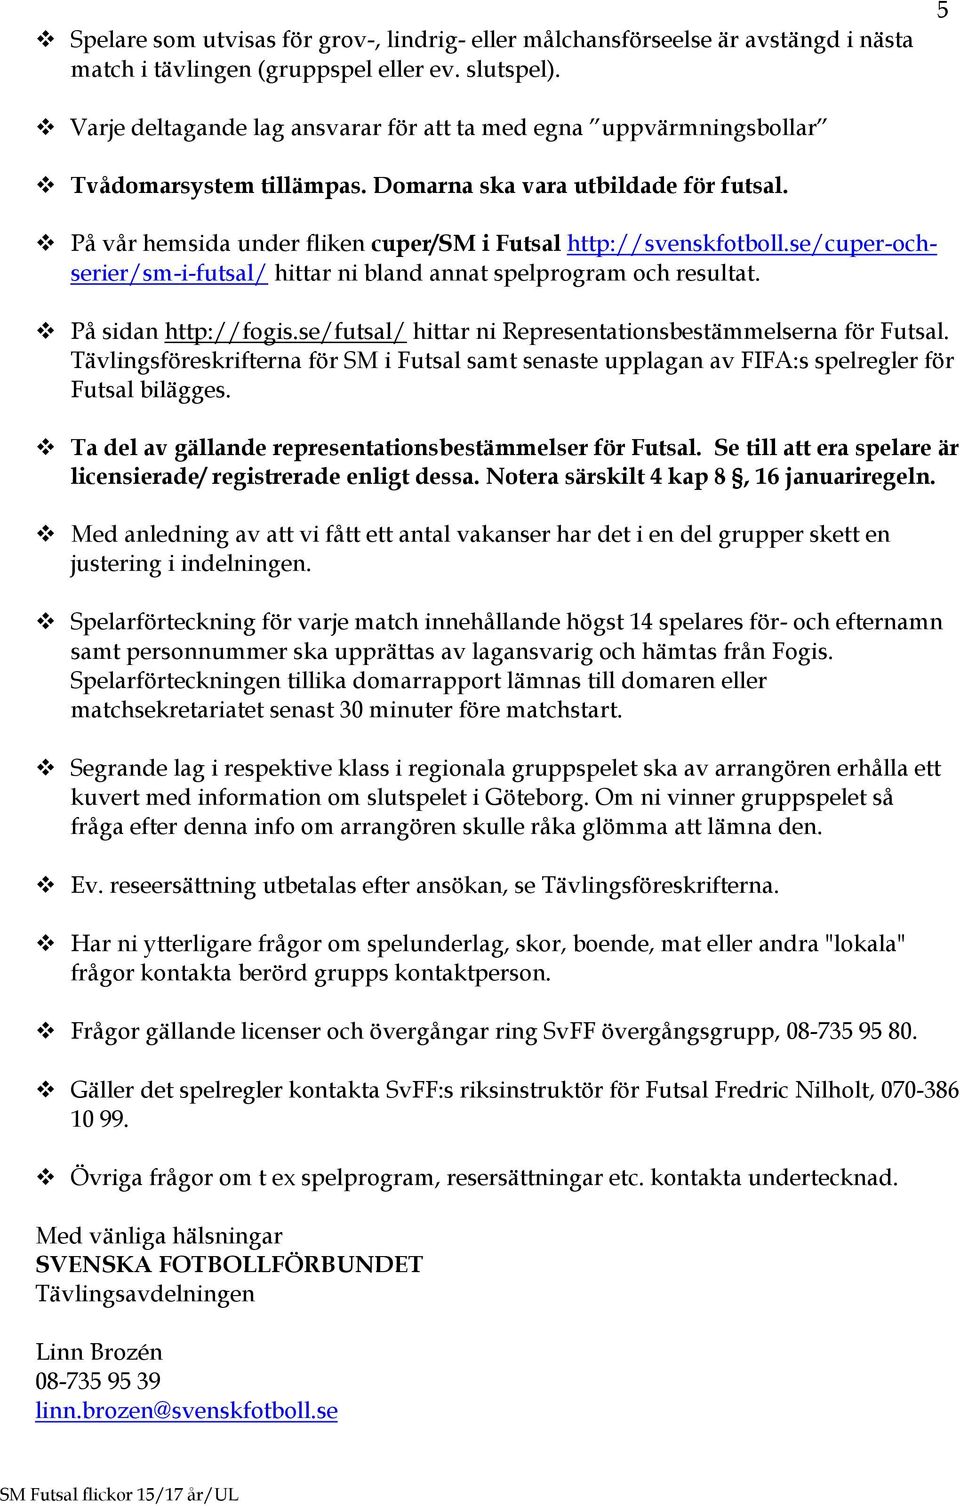 På vår hemsida under fliken cuper/sm i Futsal http://svenskfotboll.se/cuper-ochserier/sm-i-futsal/ hittar ni bland annat spelprogram och resultat. På sidan http://fogis.